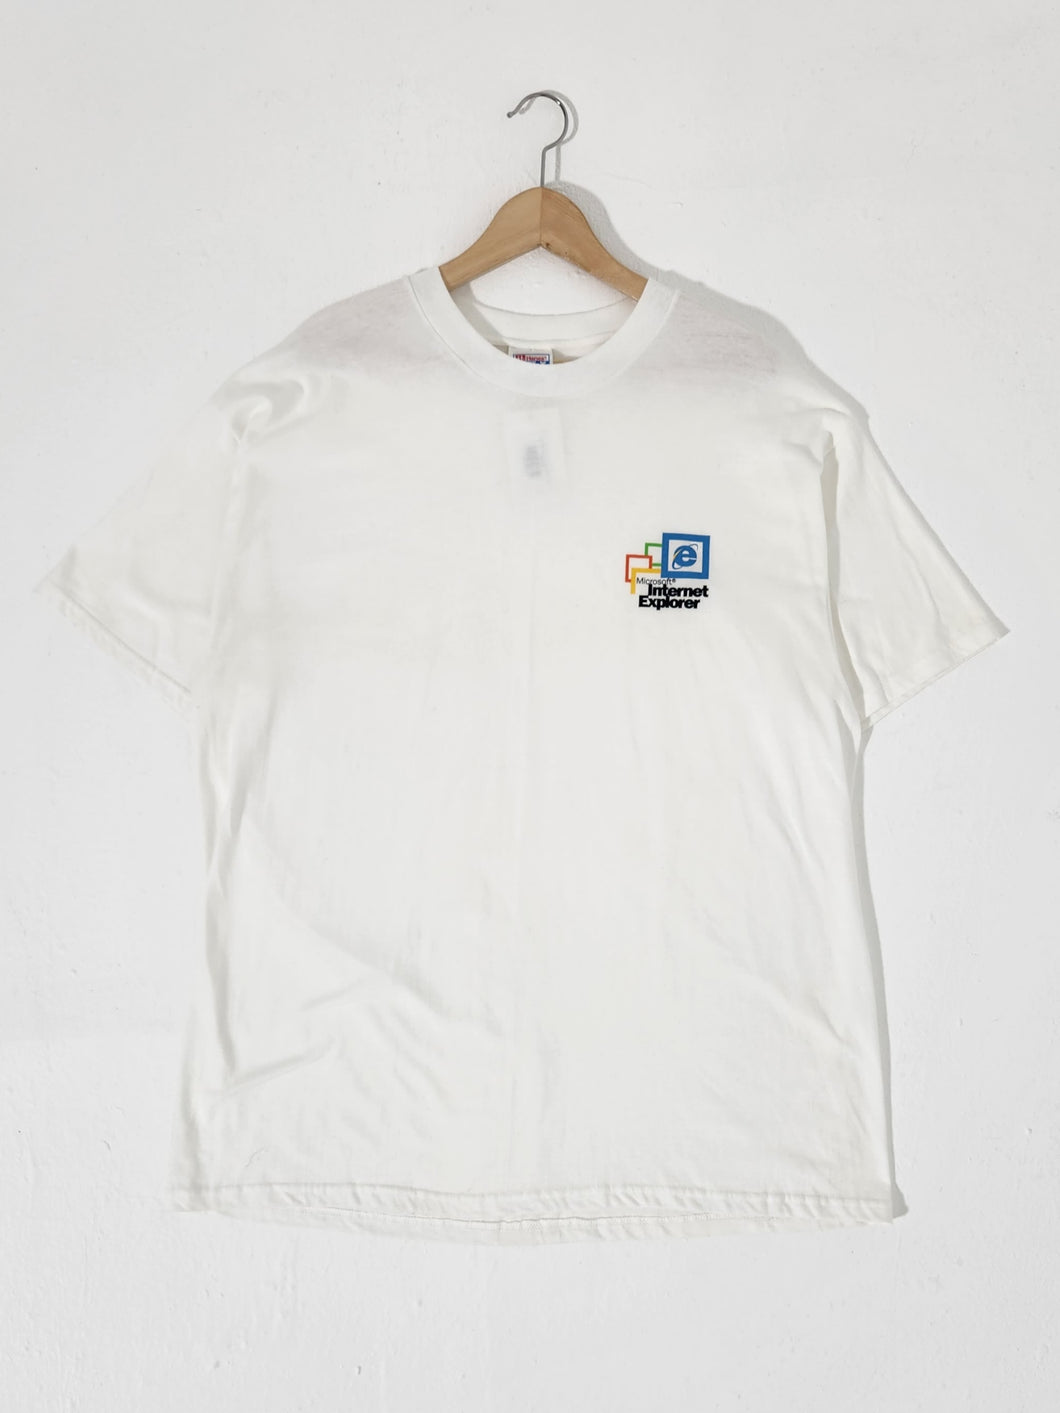 Vintage 2000s Microsoft Internet Explorer T-Shirt Sz. XL